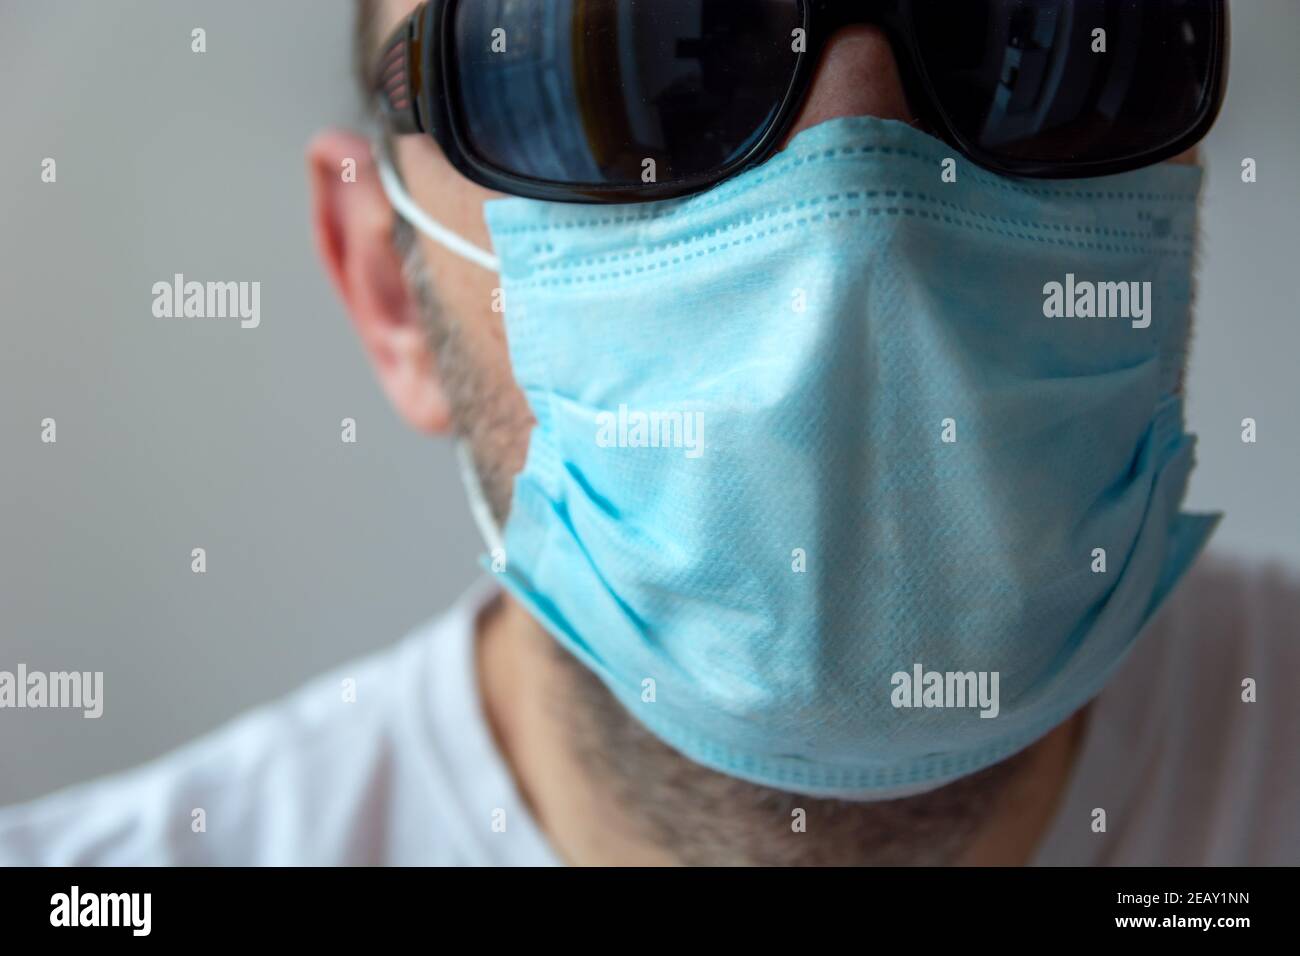 Visage masculin dans un masque chirurgical bleu et des lunettes de soleil noires Banque D'Images